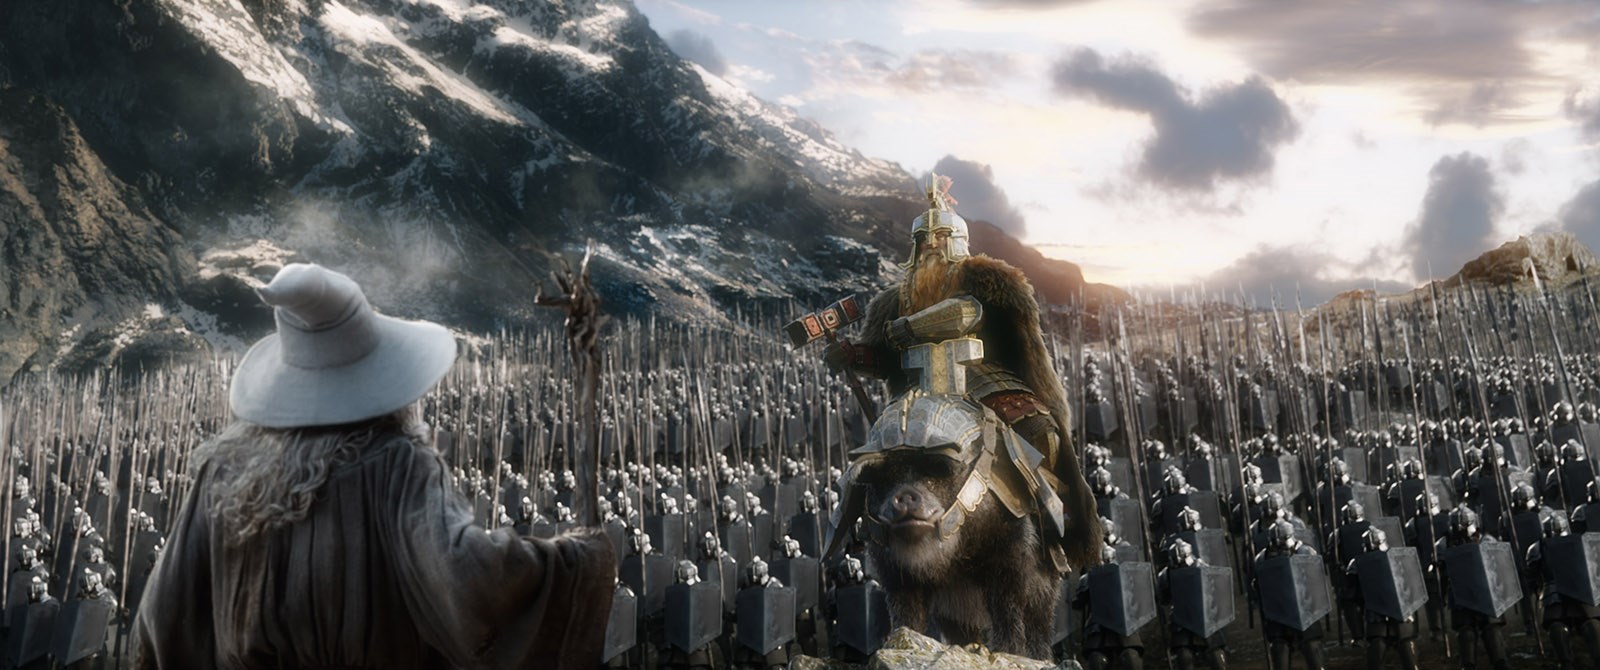 Affiche du film Le Hobbit : la Bataille des Cinq Armées